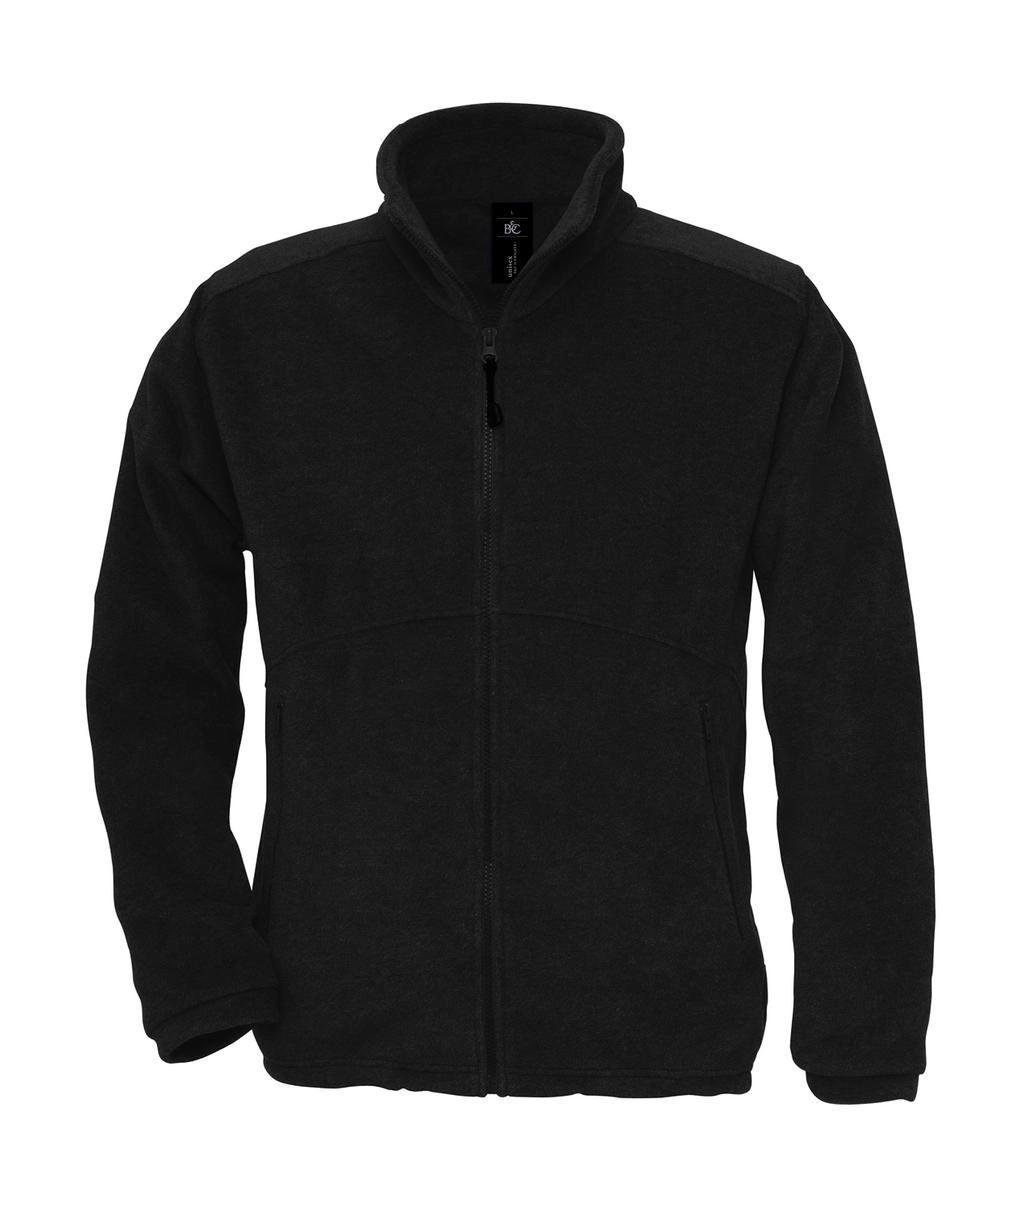 Icewalker+ Outdoor Full Zip Fleece zum Besticken und Bedrucken in der Farbe Black mit Ihren Logo, Schriftzug oder Motiv.